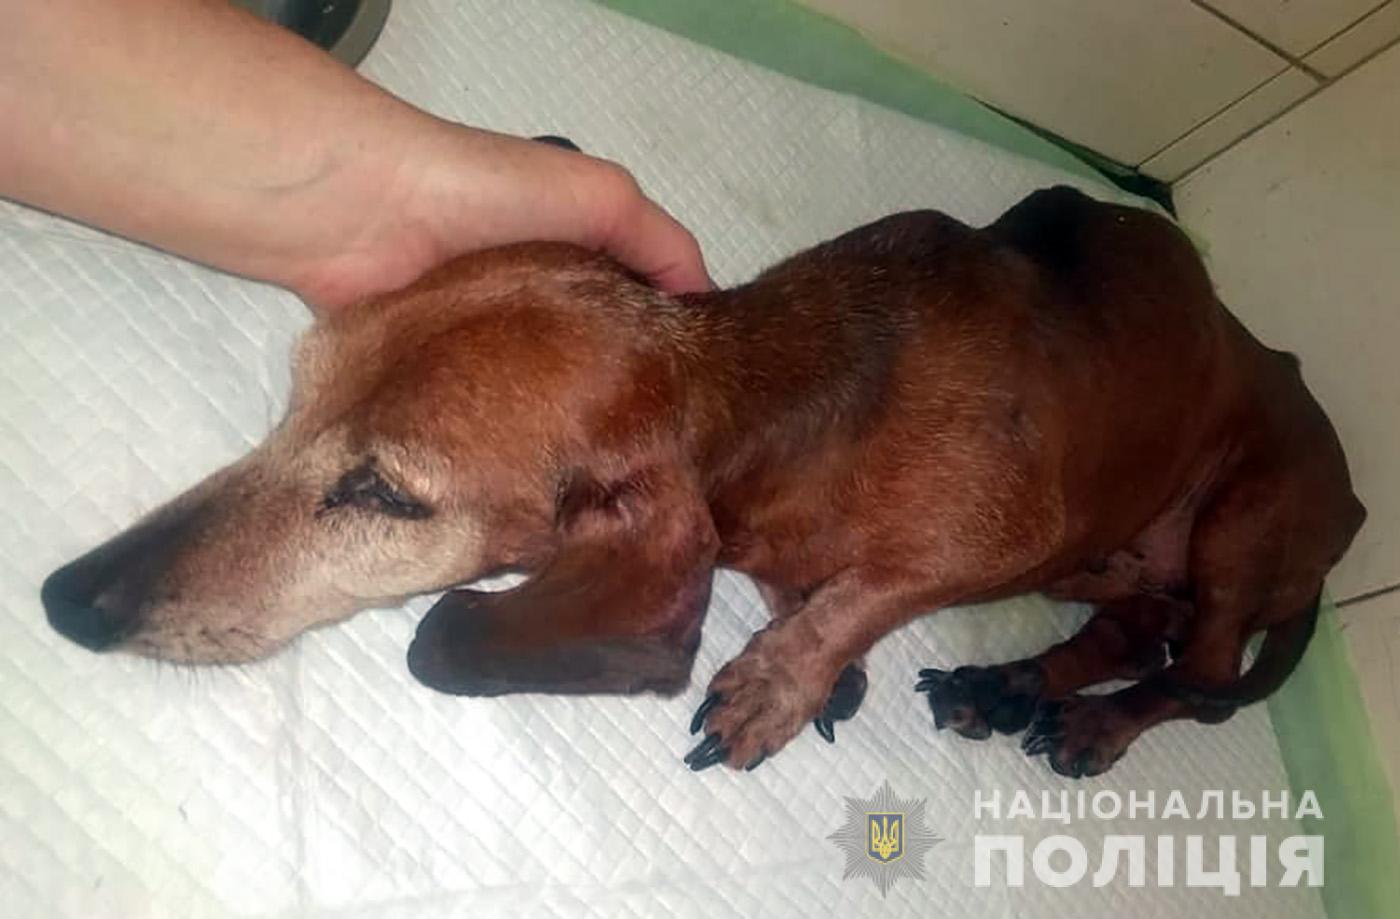 В Запорожье будут судить мужчину за жестокое обращение с собакой